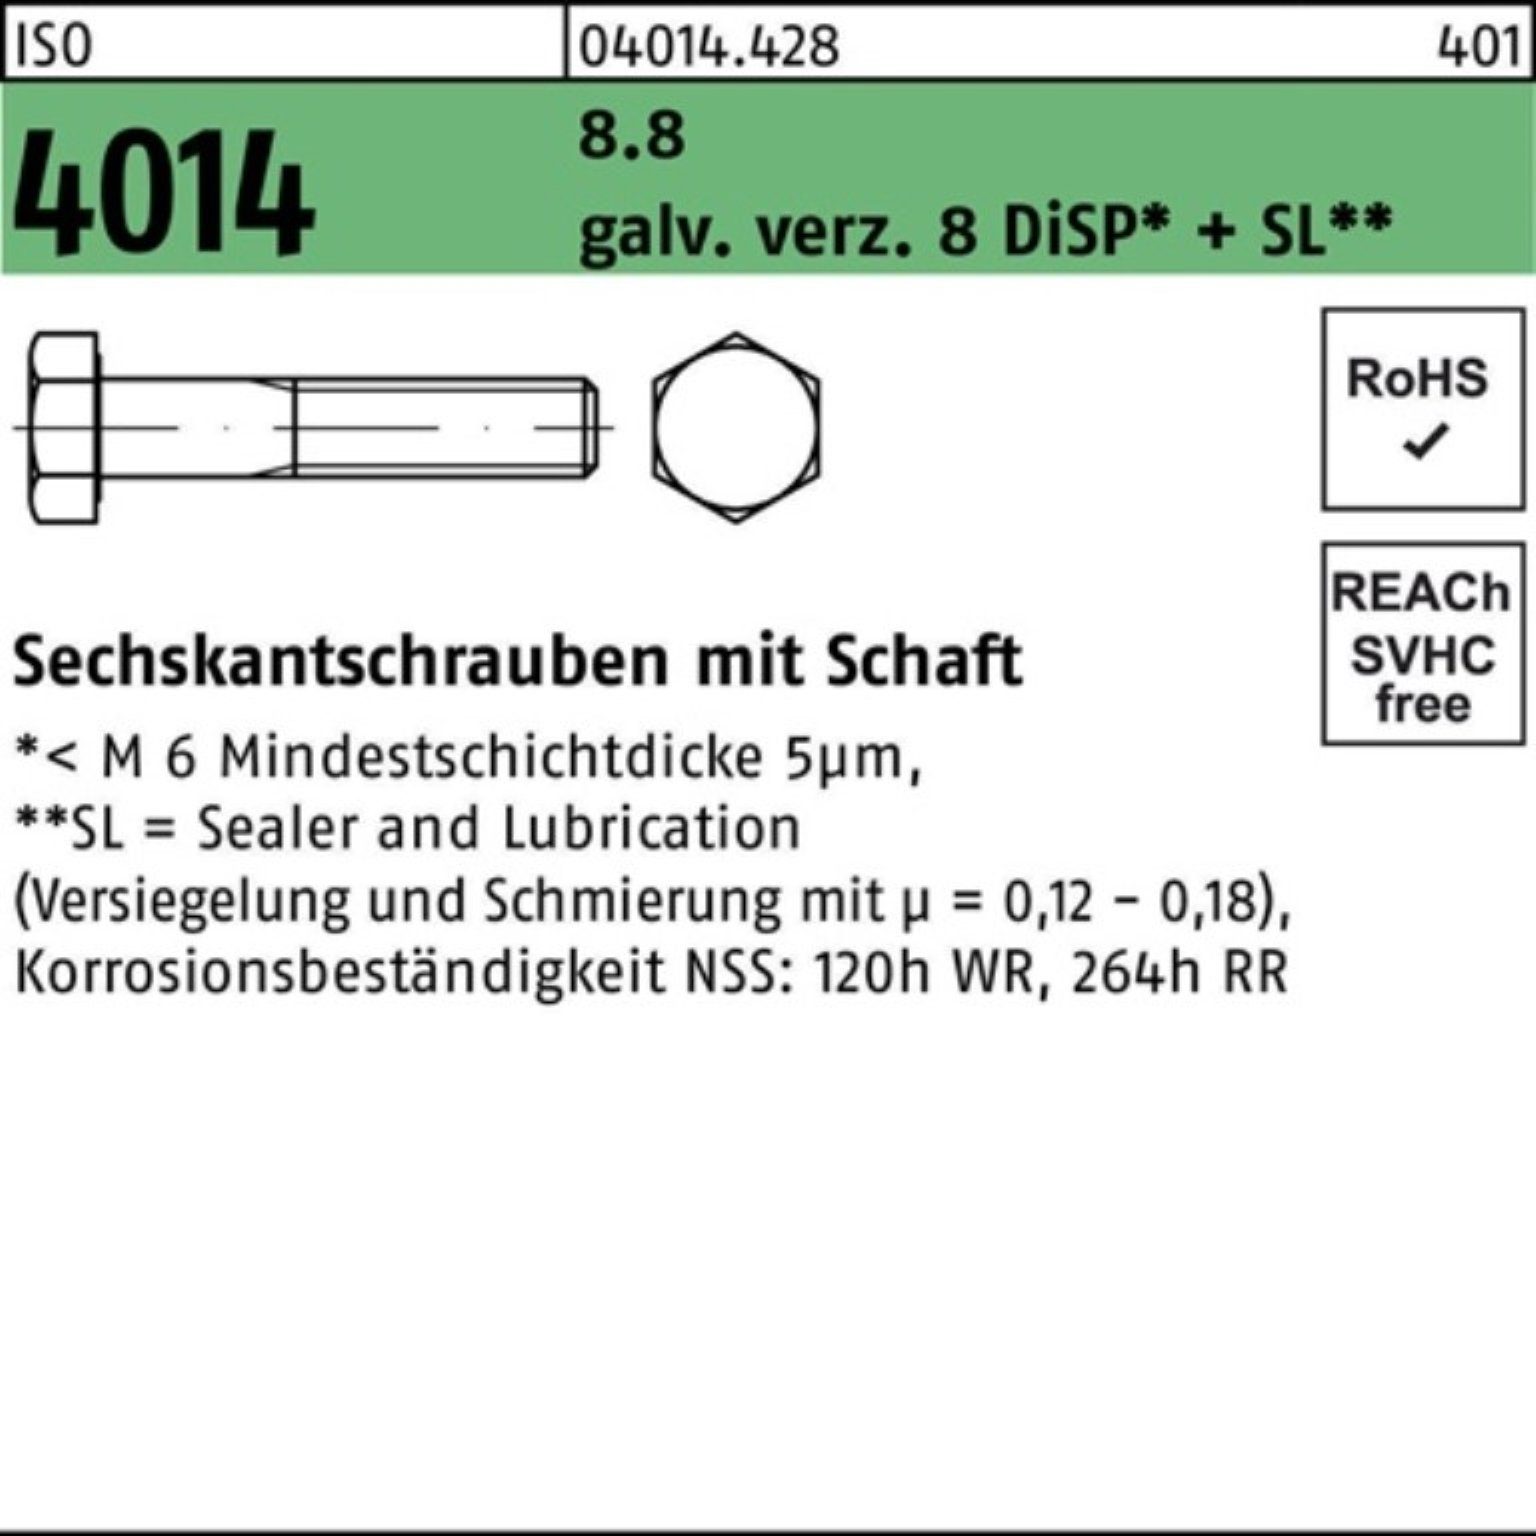 Bufab Sechskantschraube 100er ISO Sechskantschraube 4014 Schaft 8 M16x280 Pack 8.8 galv.verz